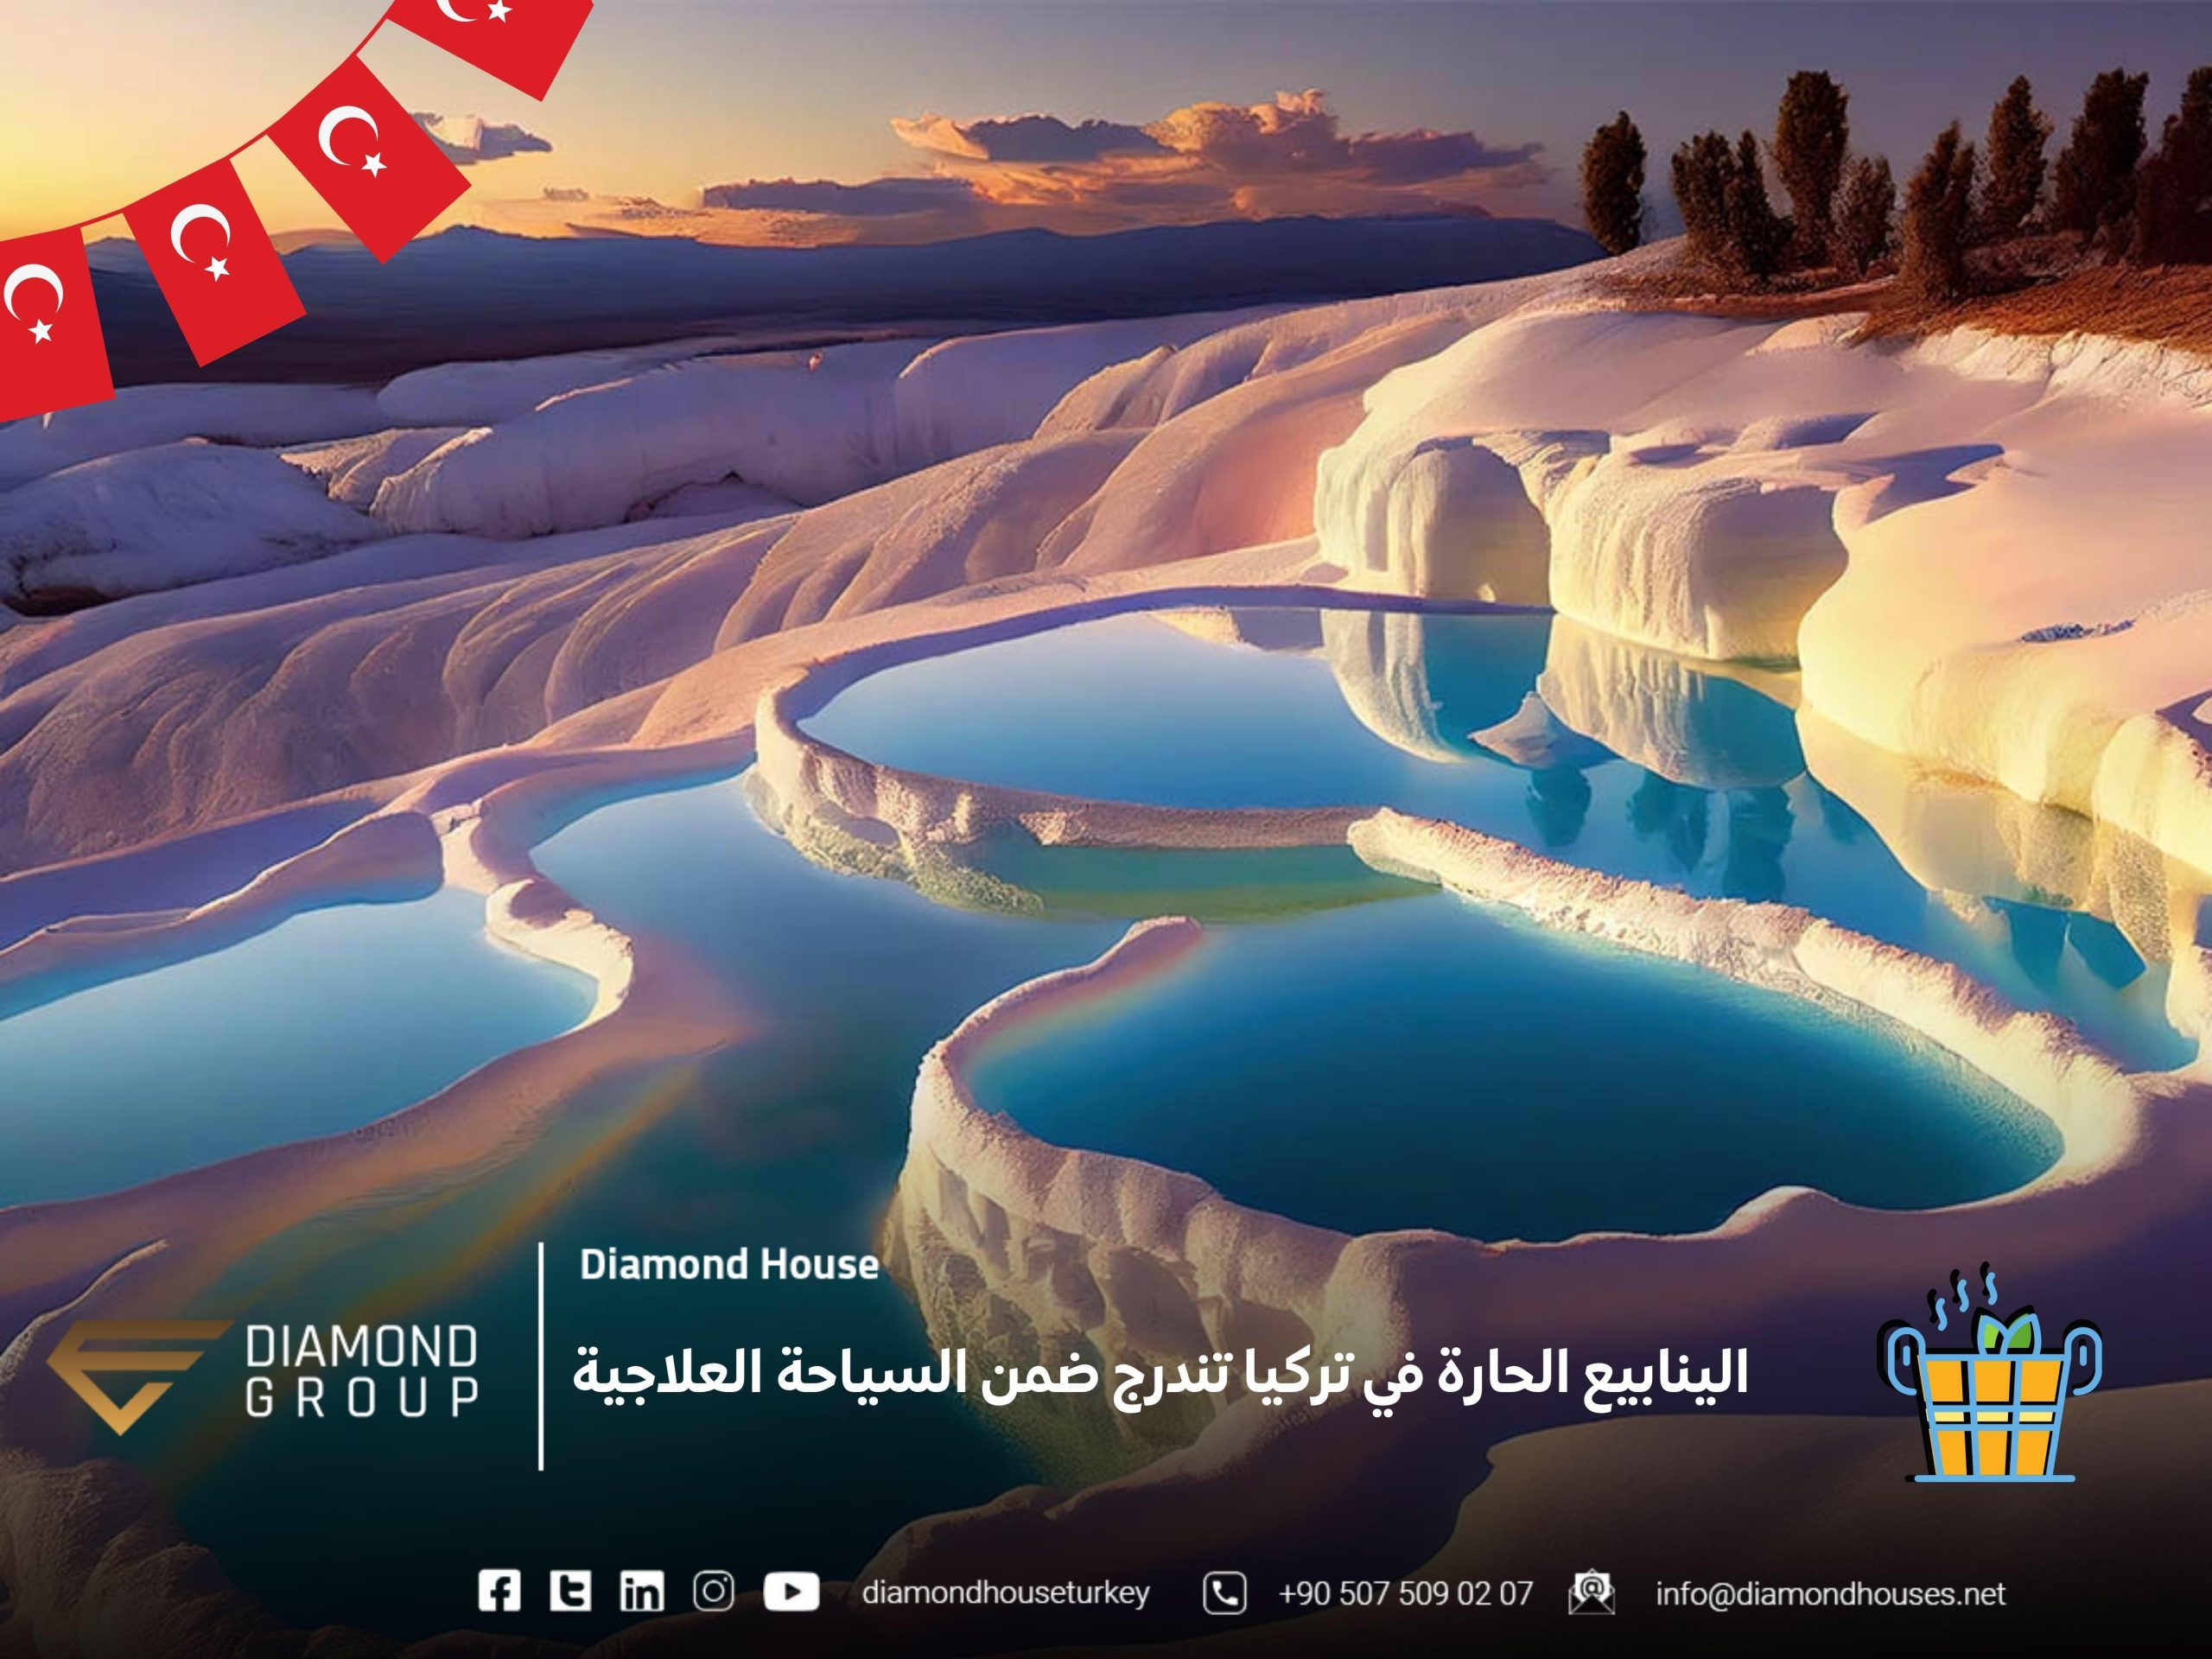 الينابيع الحارة في تركيا تندرج ضمن السياحة العلاجية